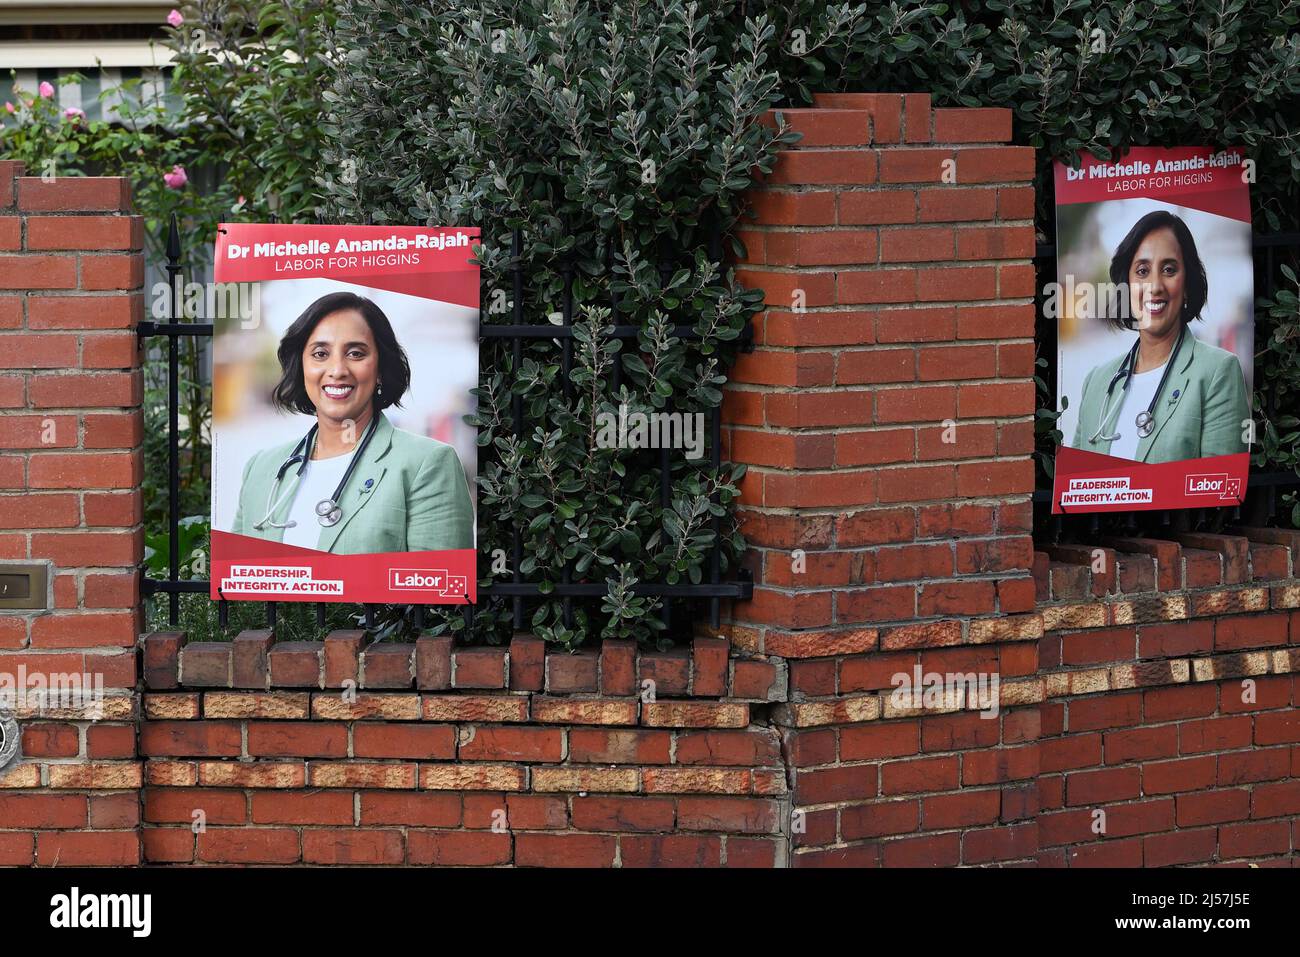 Firma della campagna per la dott.ssa Michelle Ananda-Rajah, candidato del partito laburista per l'elettorato federale di Higgins, sul recinto di una casa suburbana Foto Stock